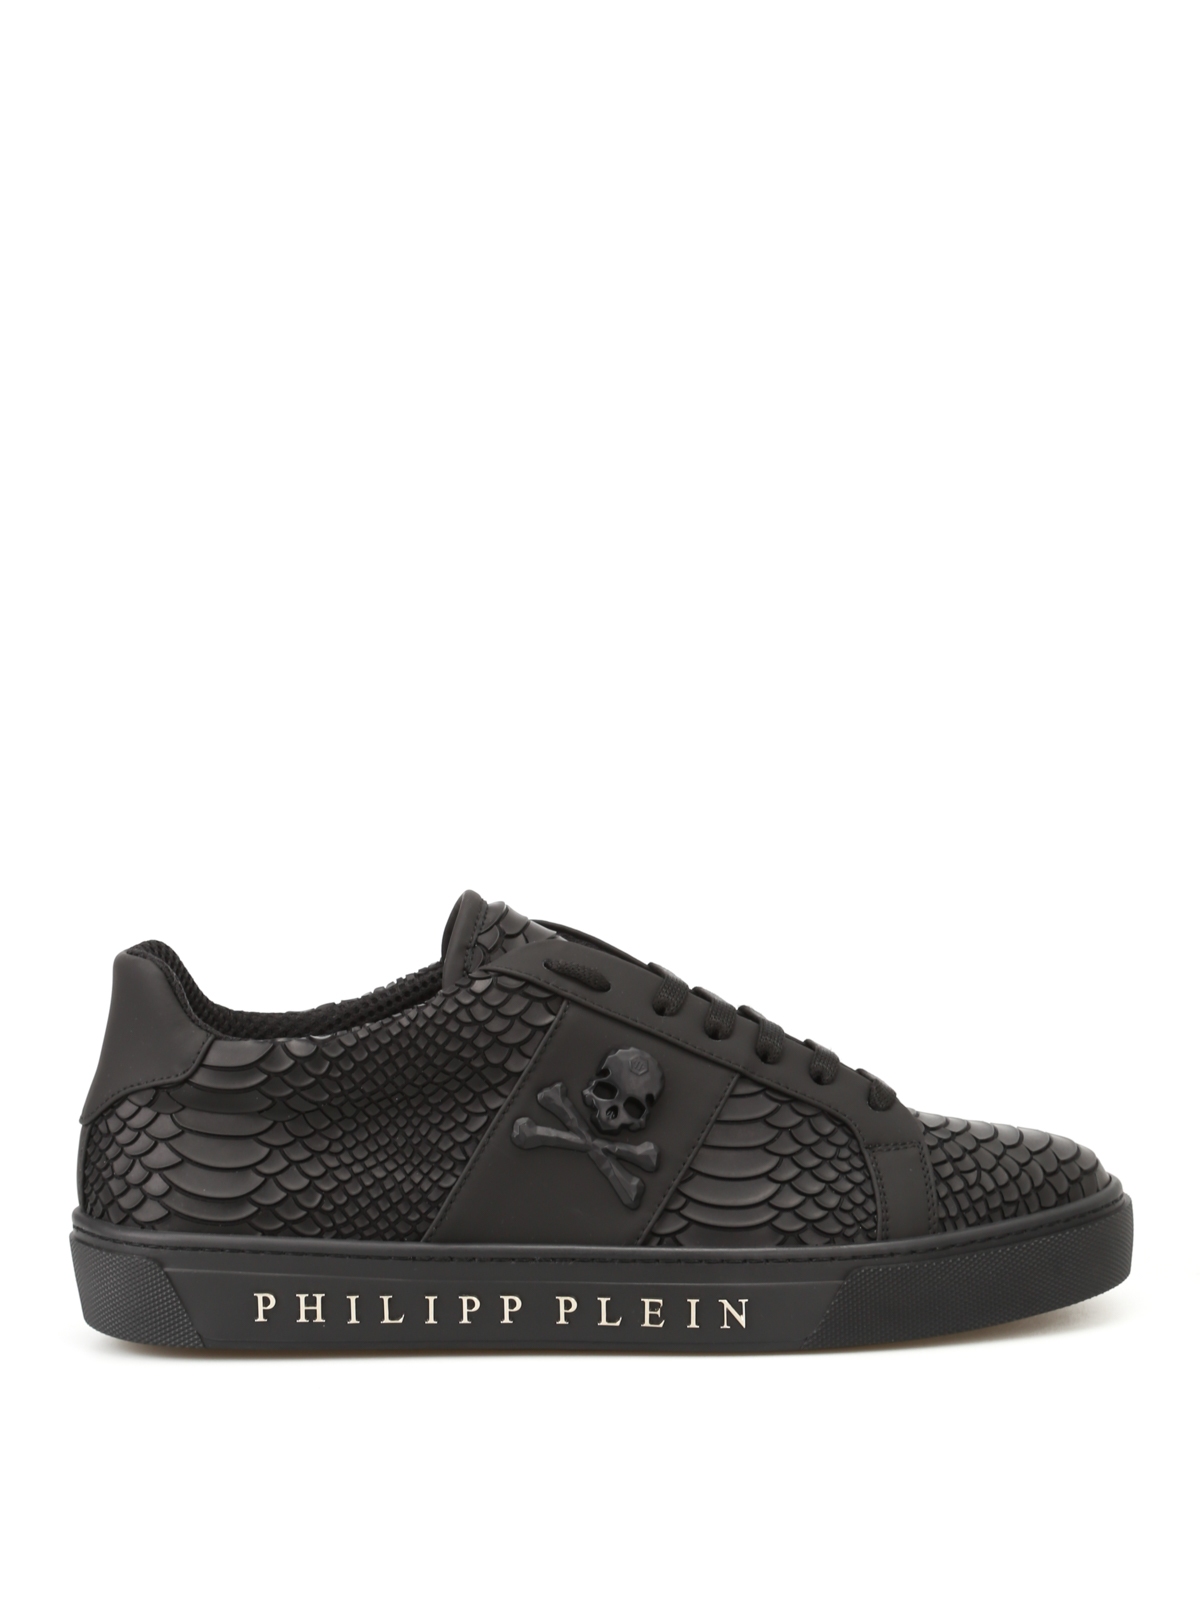 philipp plein sneakers price